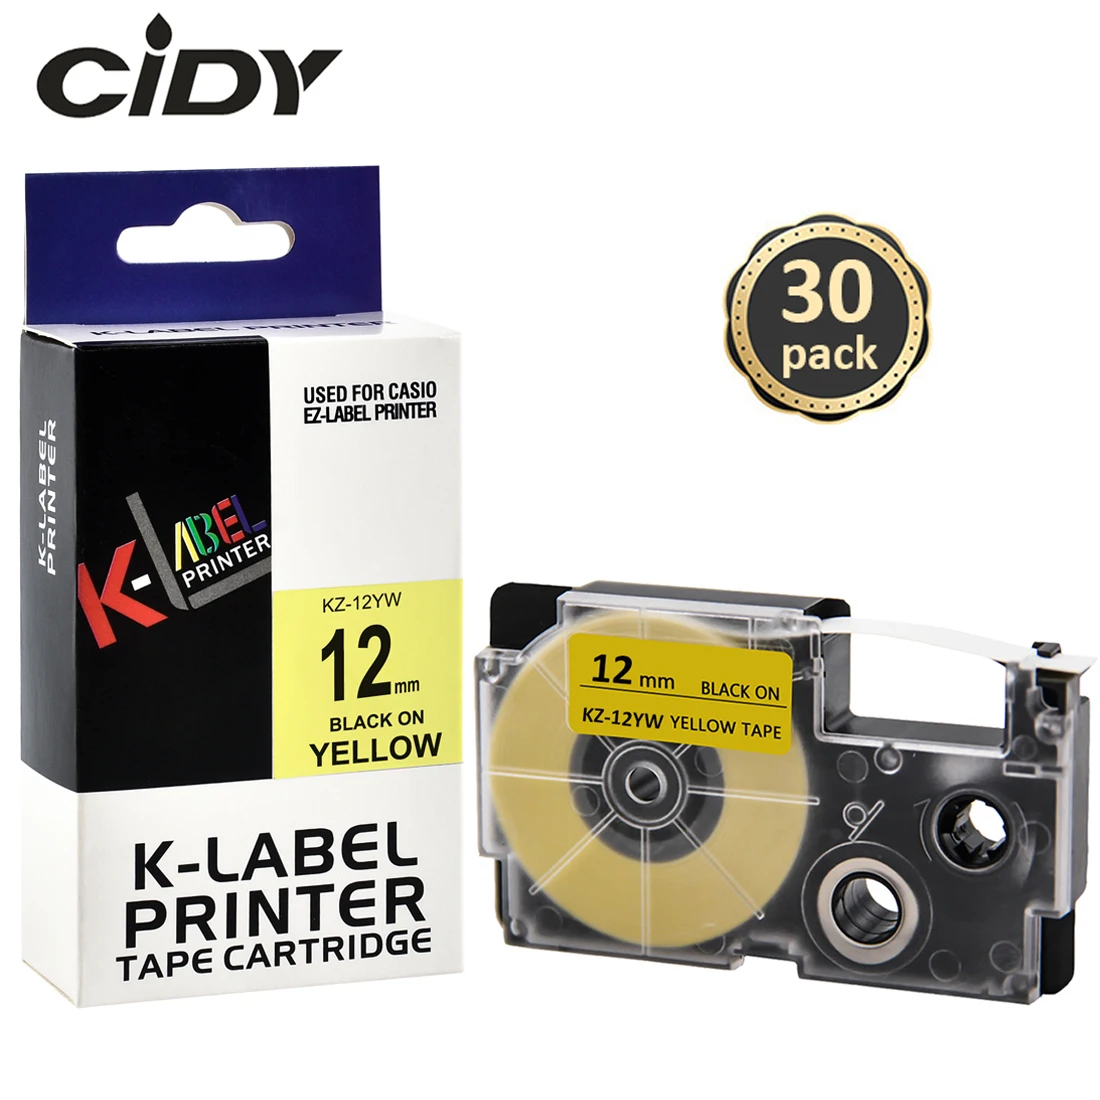 

CIDY 30pcs XR-12YW 12mm black on yellow Compatible CASIO Label tape for KL-60 KL-60SR KL-120 KL-820 EZ Label Maker